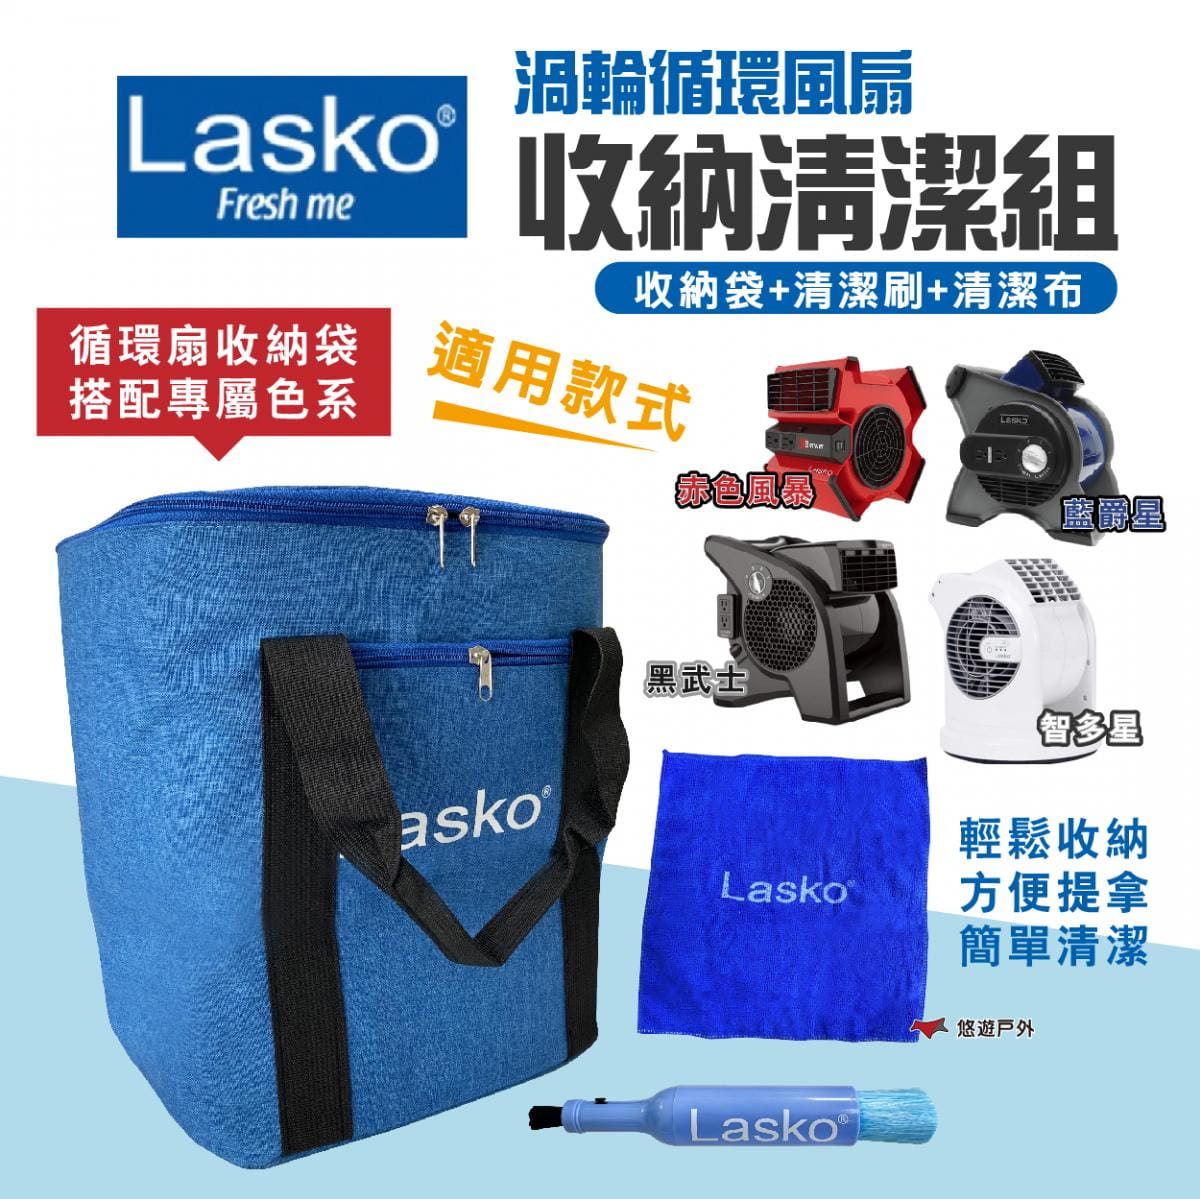 【Lasko】渦輪循環扇收納清潔組(收納袋+清潔刷) 悠遊戶外 1